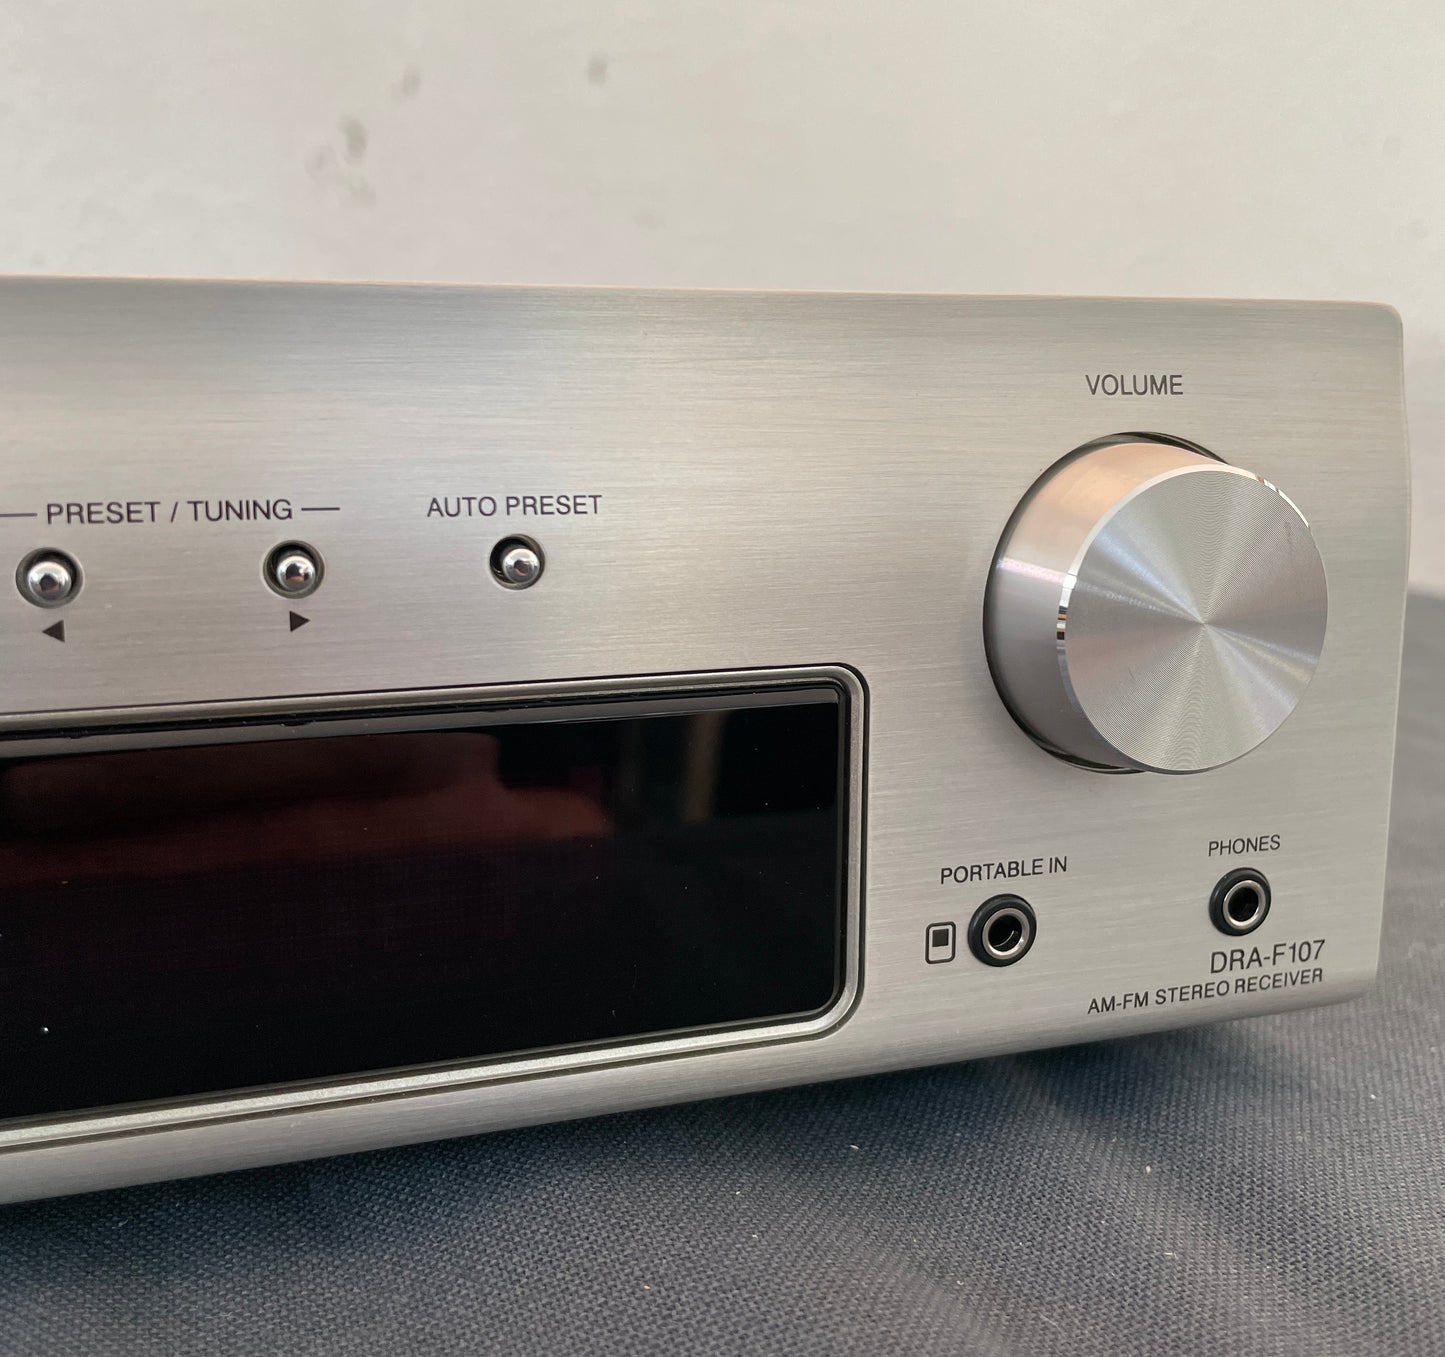 2010 Denon DRA-F107 AM/FM Stereo Receiver